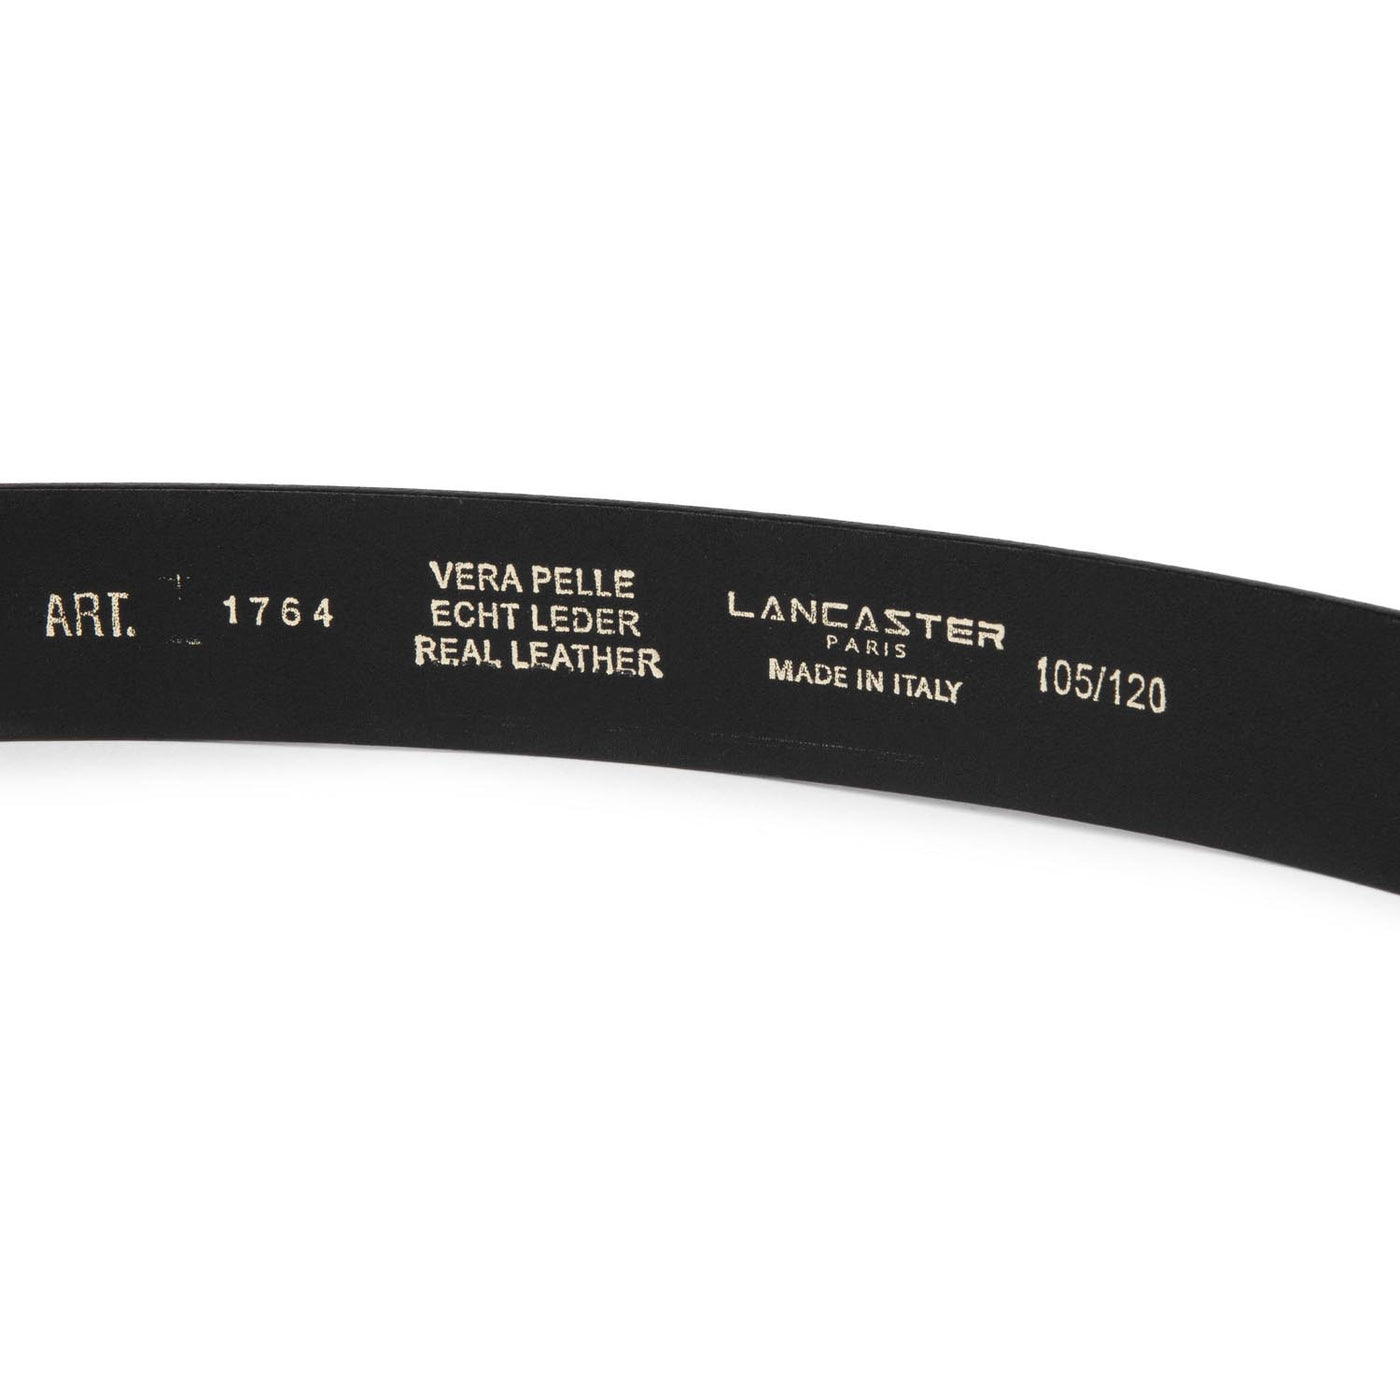 ceinture - ceinture glassé homme #couleur_noir